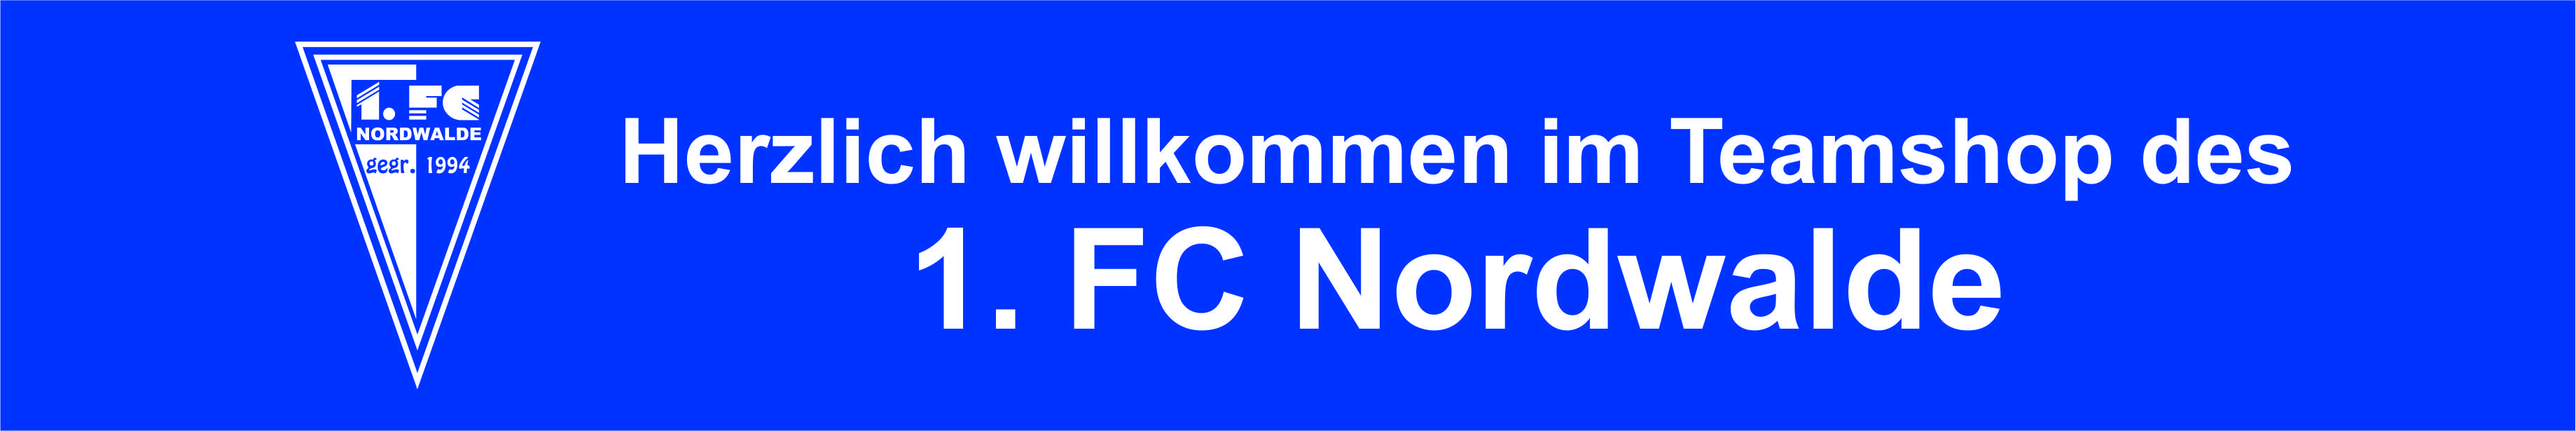 1. FC Nordwalde Title Image